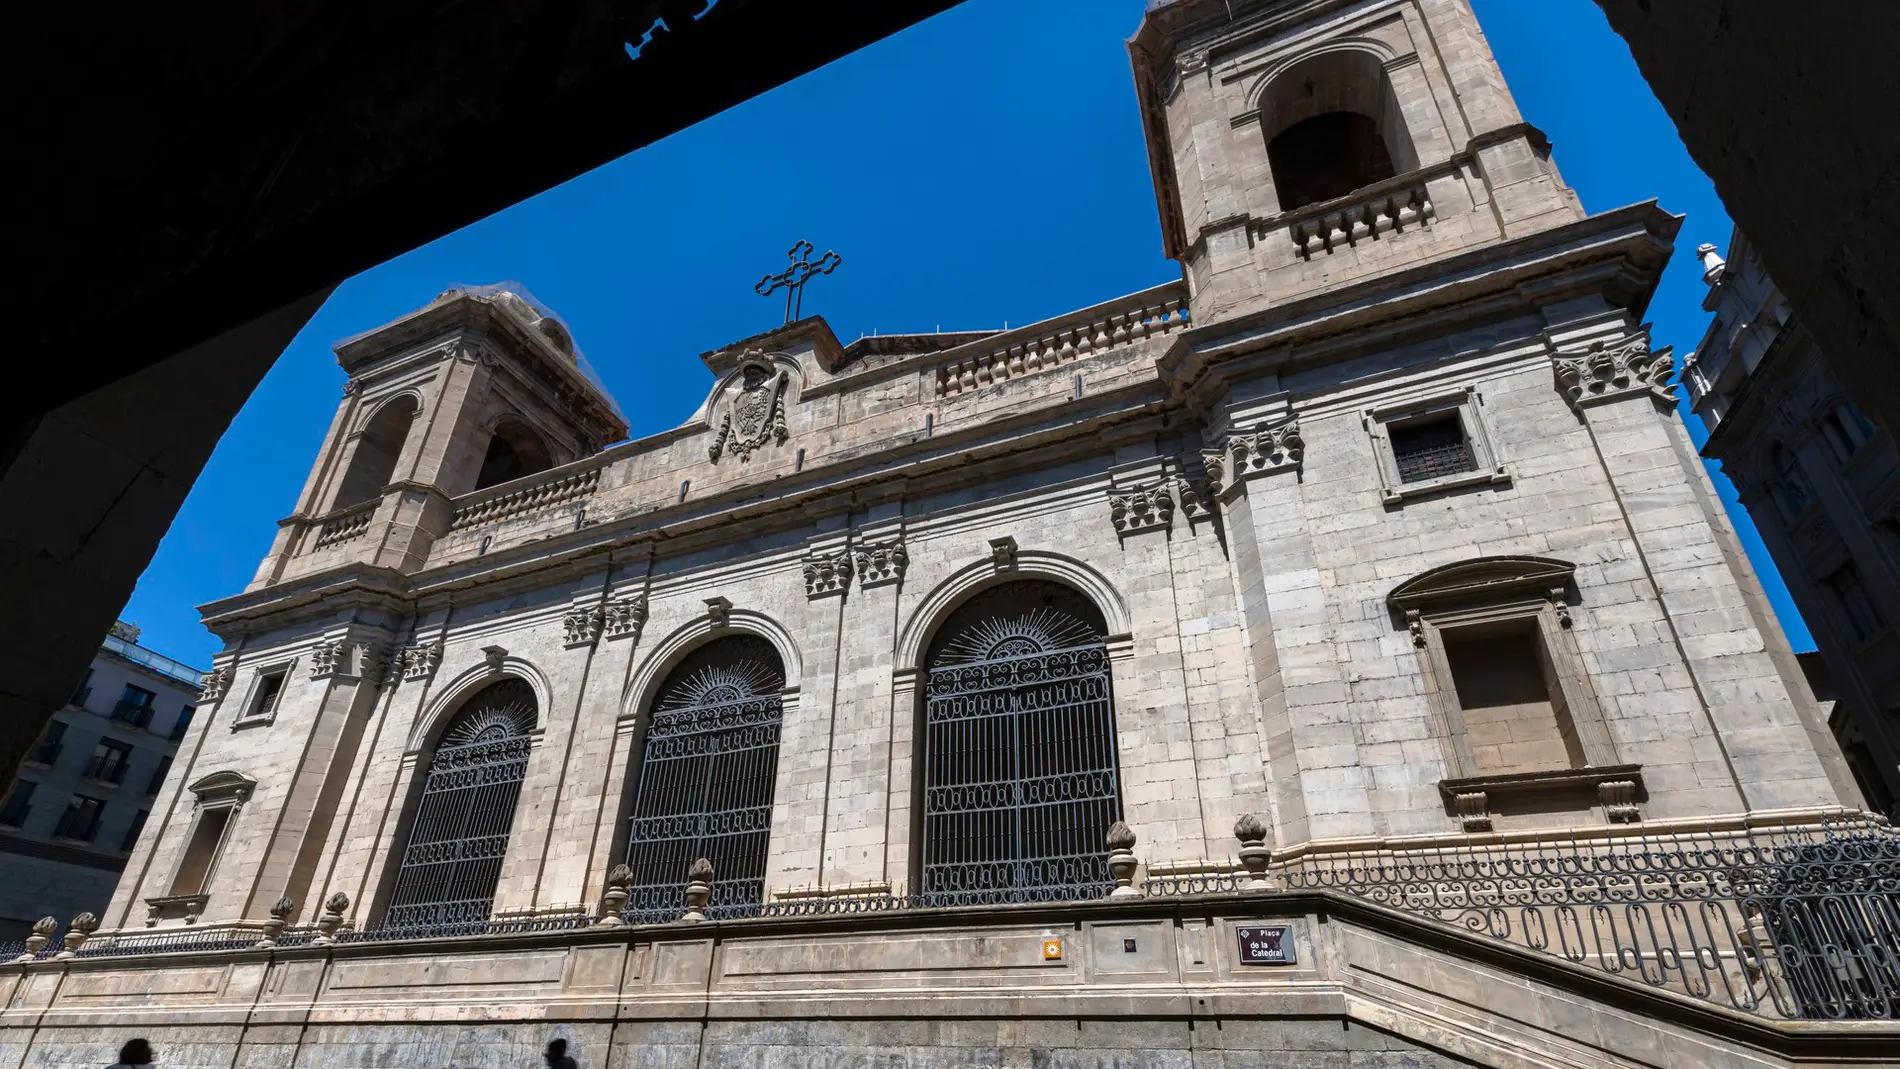 La Catedral Nueva de Lleida y sus dos Vírgenes: la Moreneta y la Virgen del Chichón